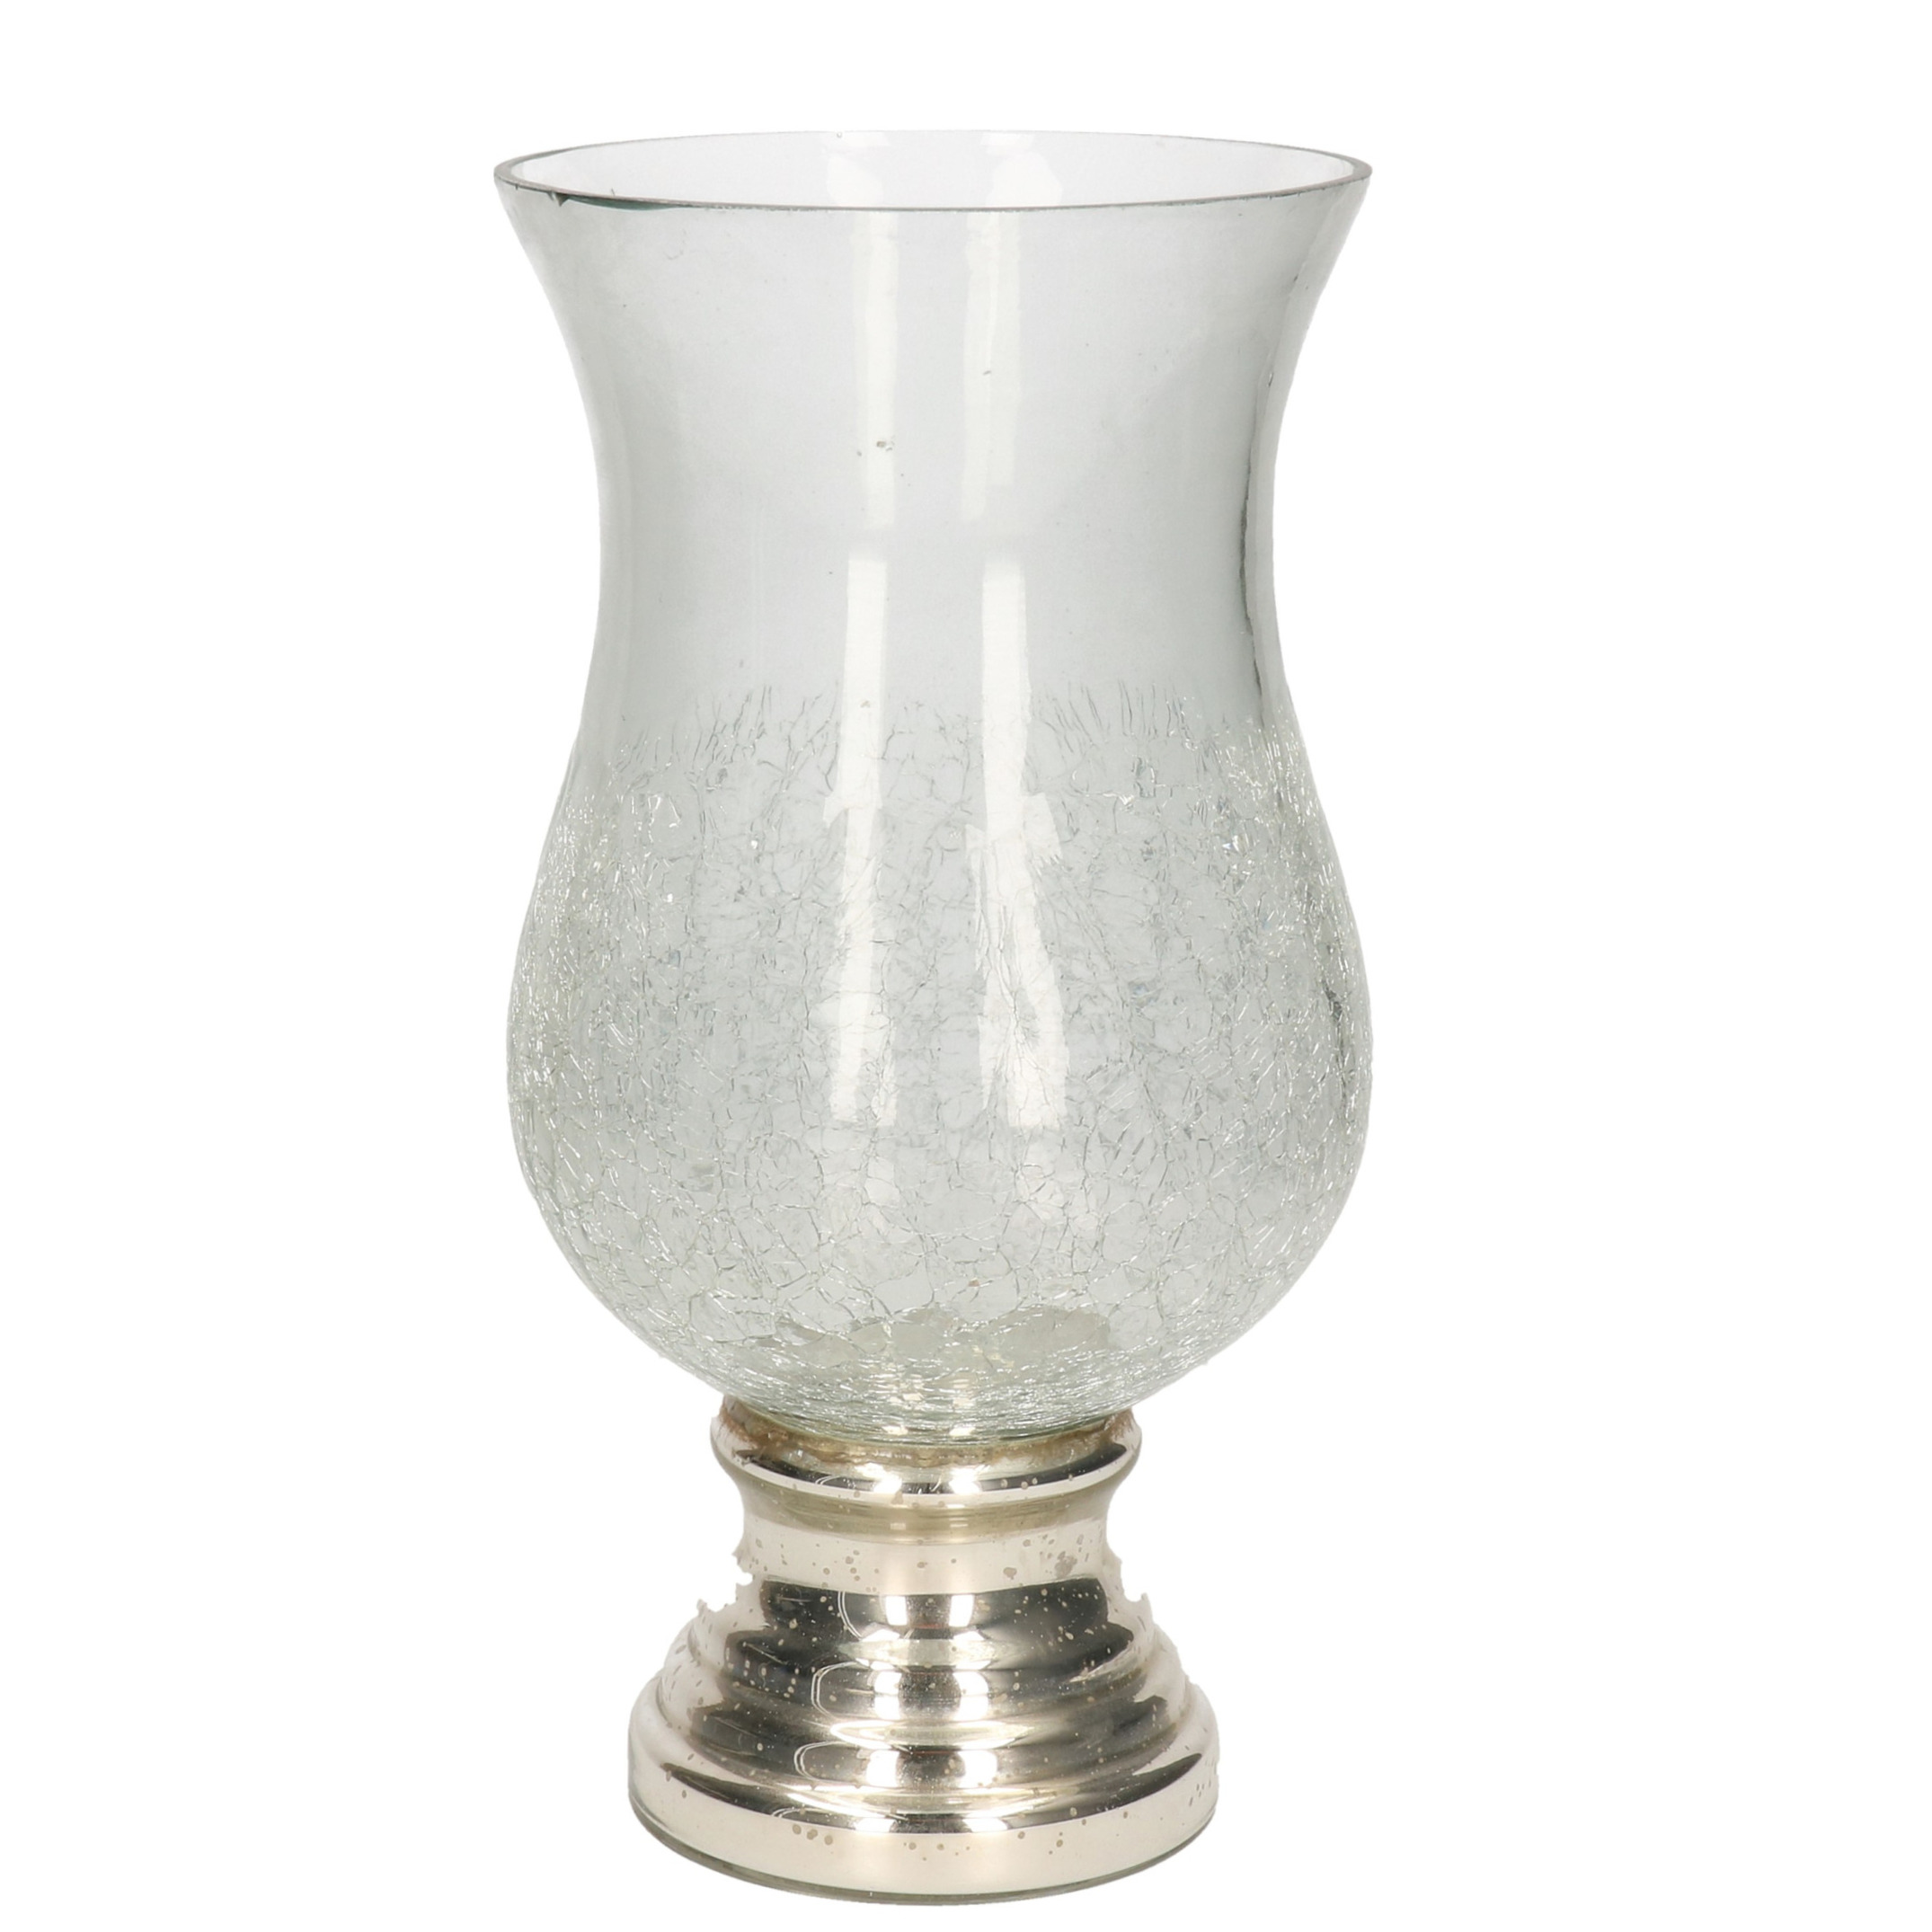 Craquele glazen kaarsenhouder voor theelichtjes-waxinelichtjes met zilveren voet 26,5 x 13,5 cm